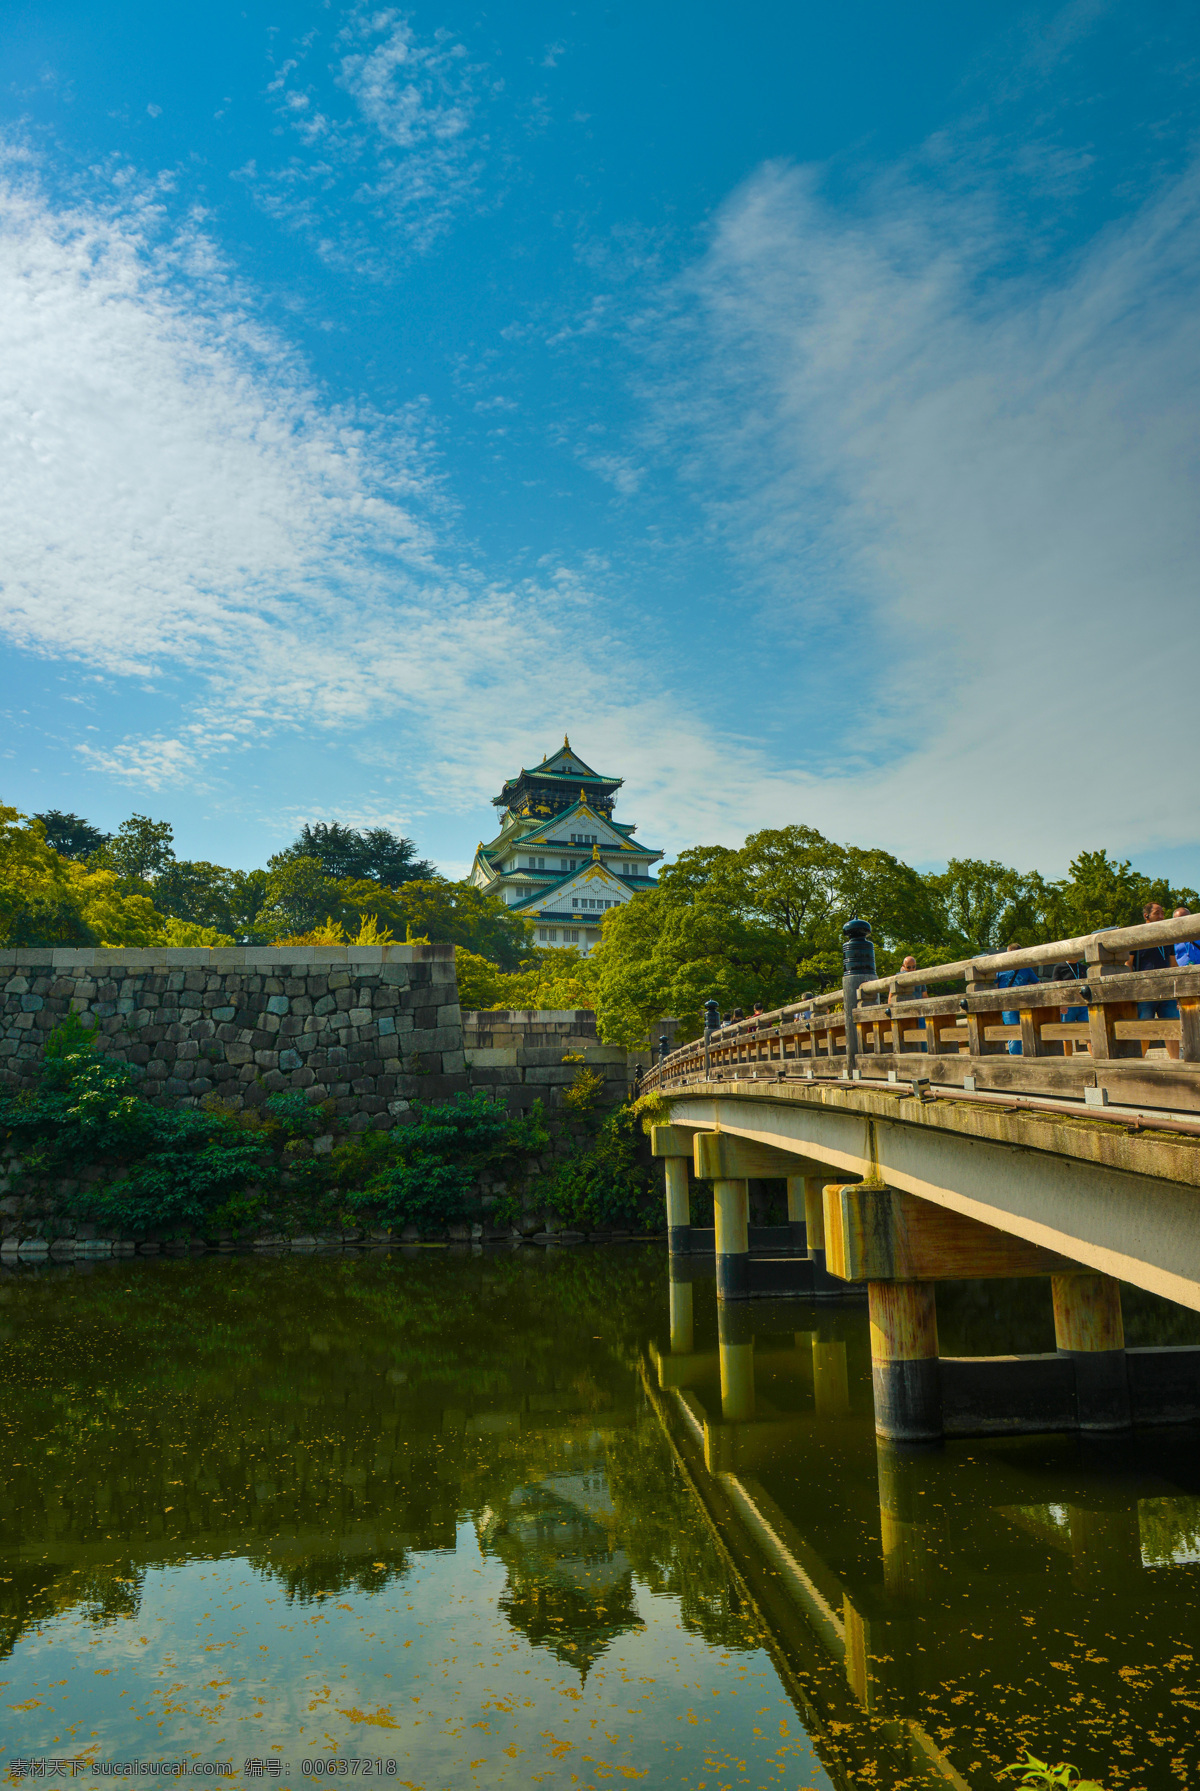 日本 大阪 城 公园 大阪城公园 大阪城 蓝天 白云 树木 小桥 河流 日本自由行 旅游摄影 国外旅游